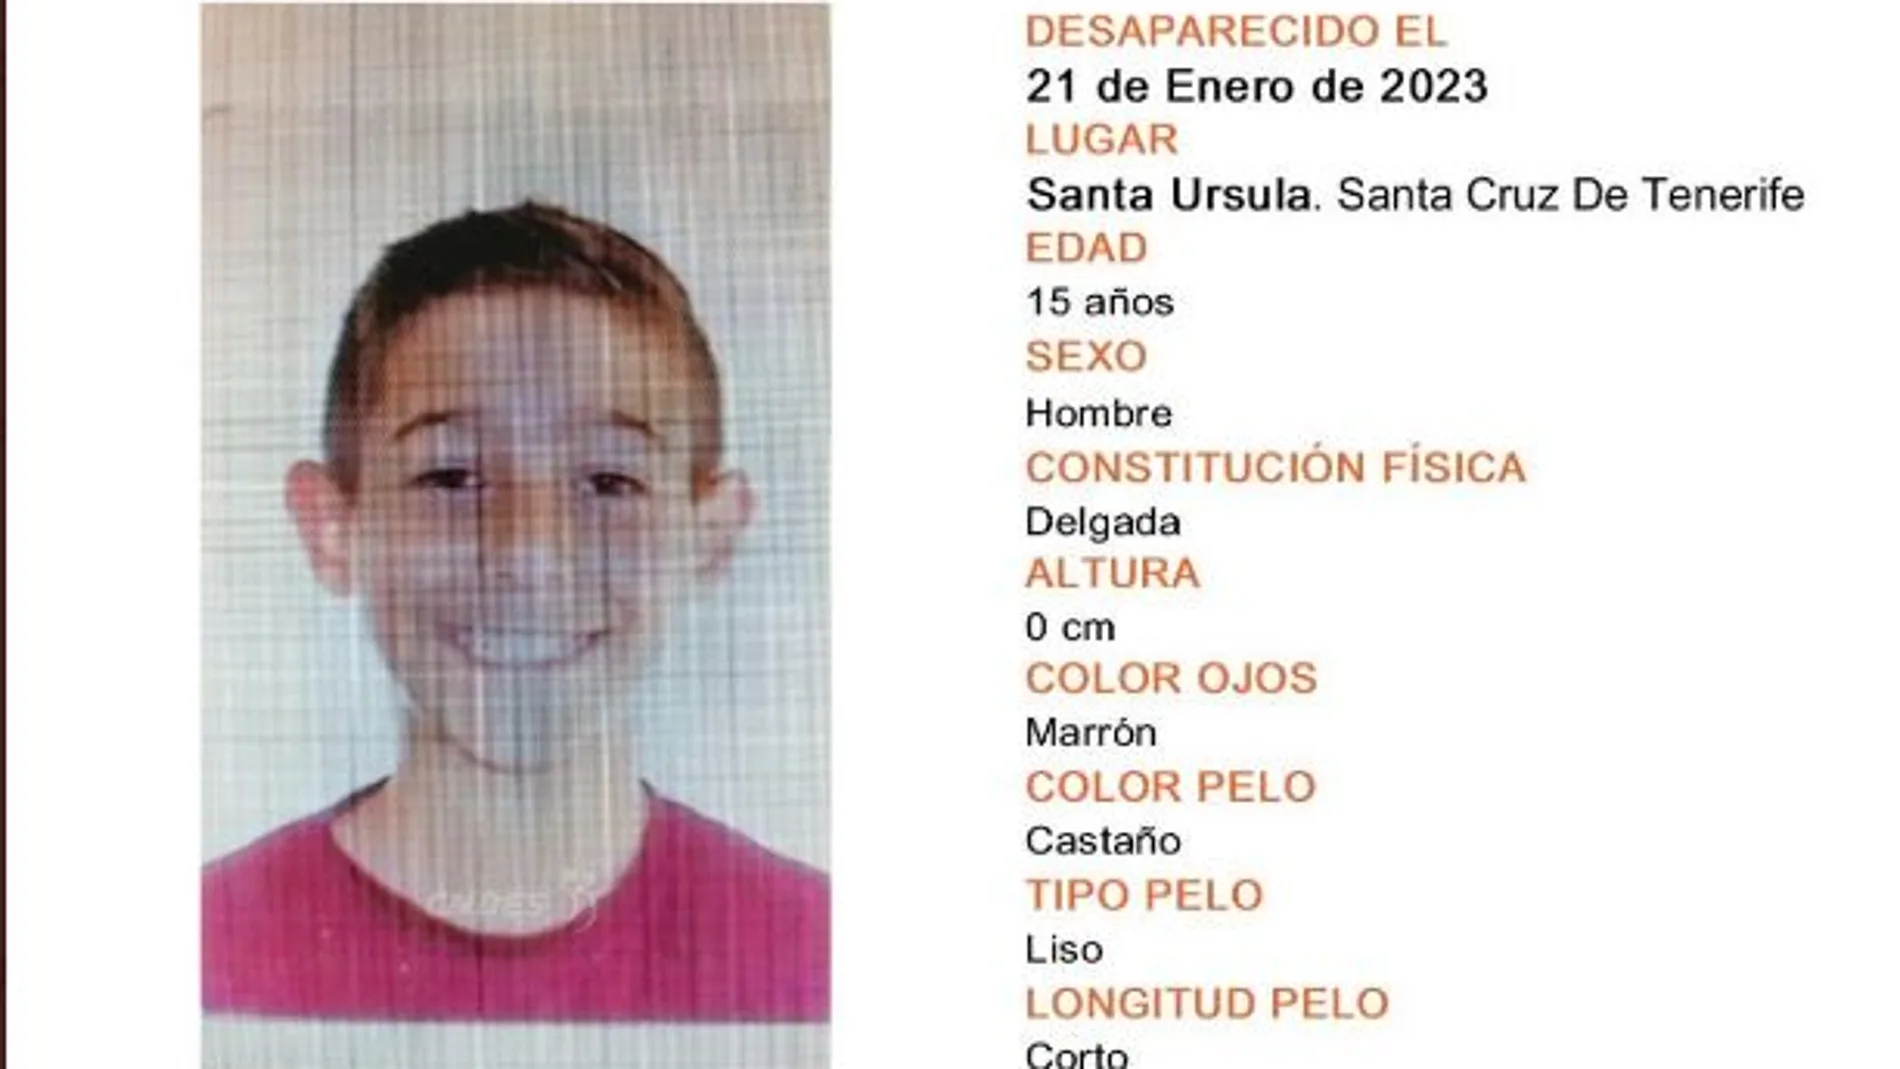 El menor desaparecido en Tenerife 